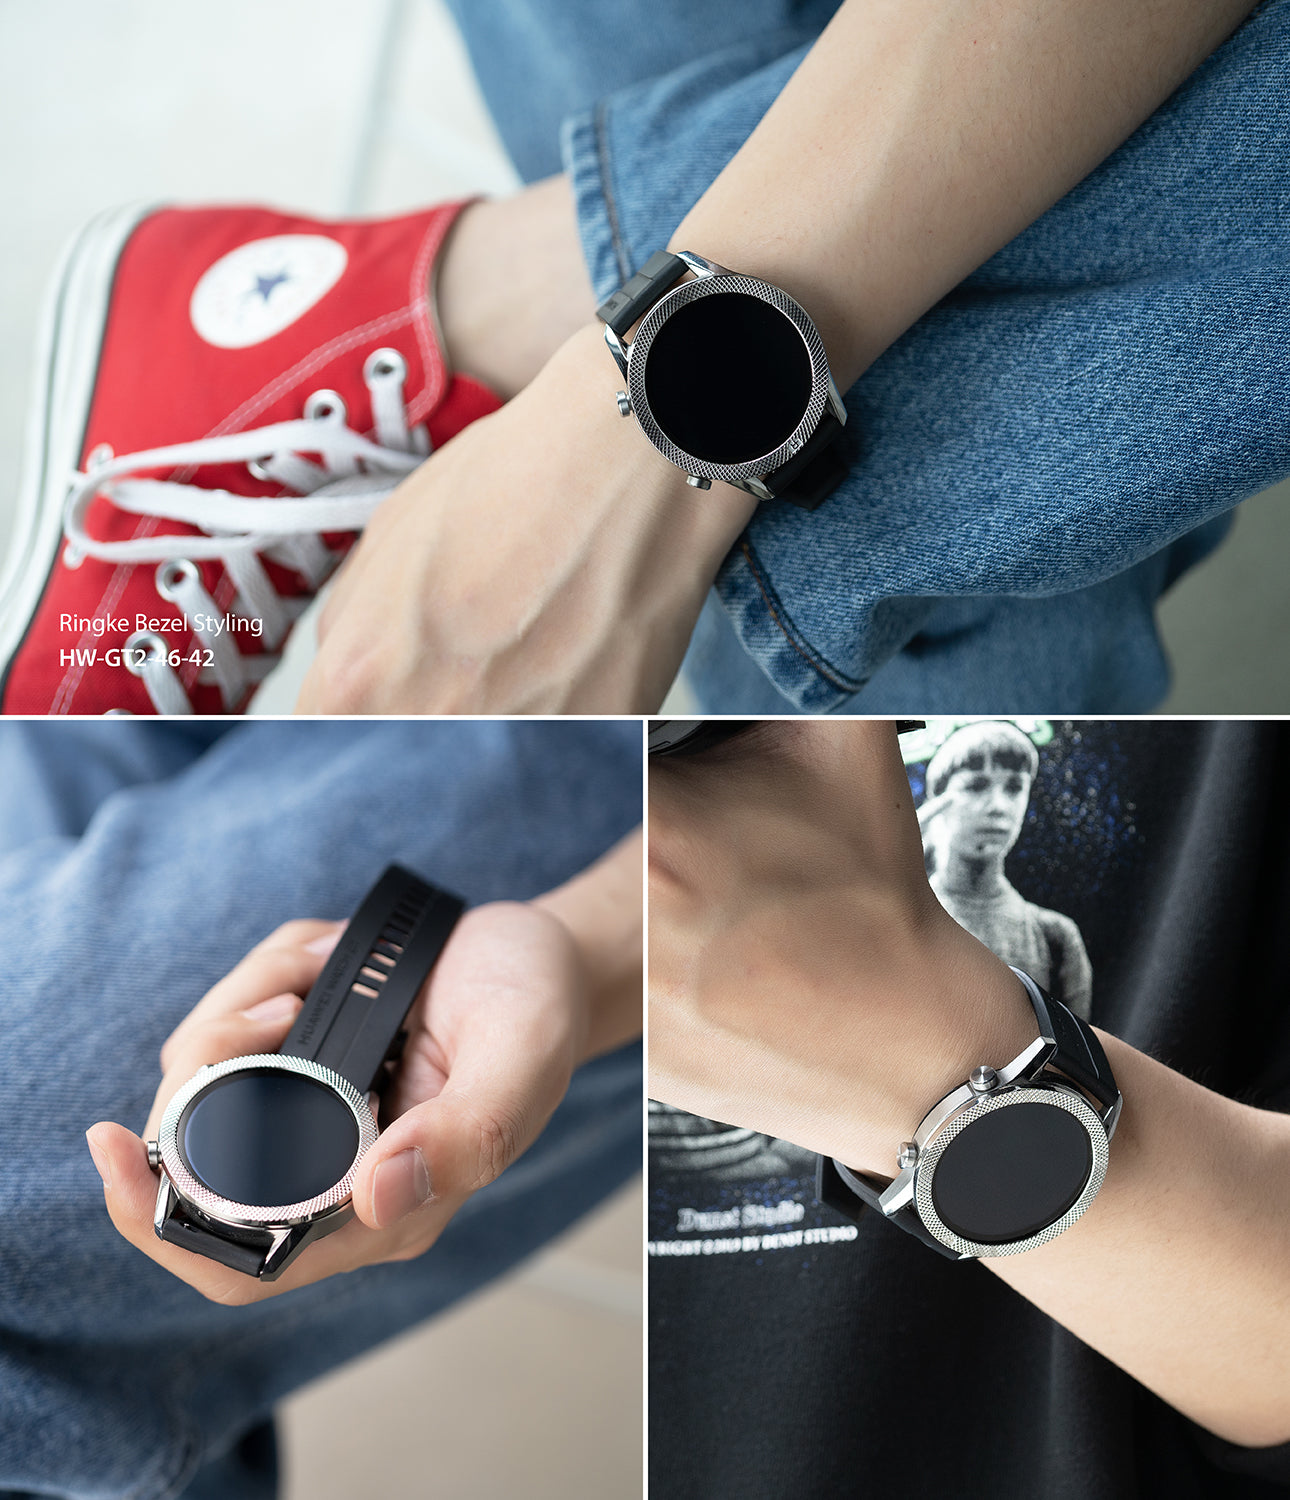 ringke bezel styling for huawei watch gt 2 46mm 46-42